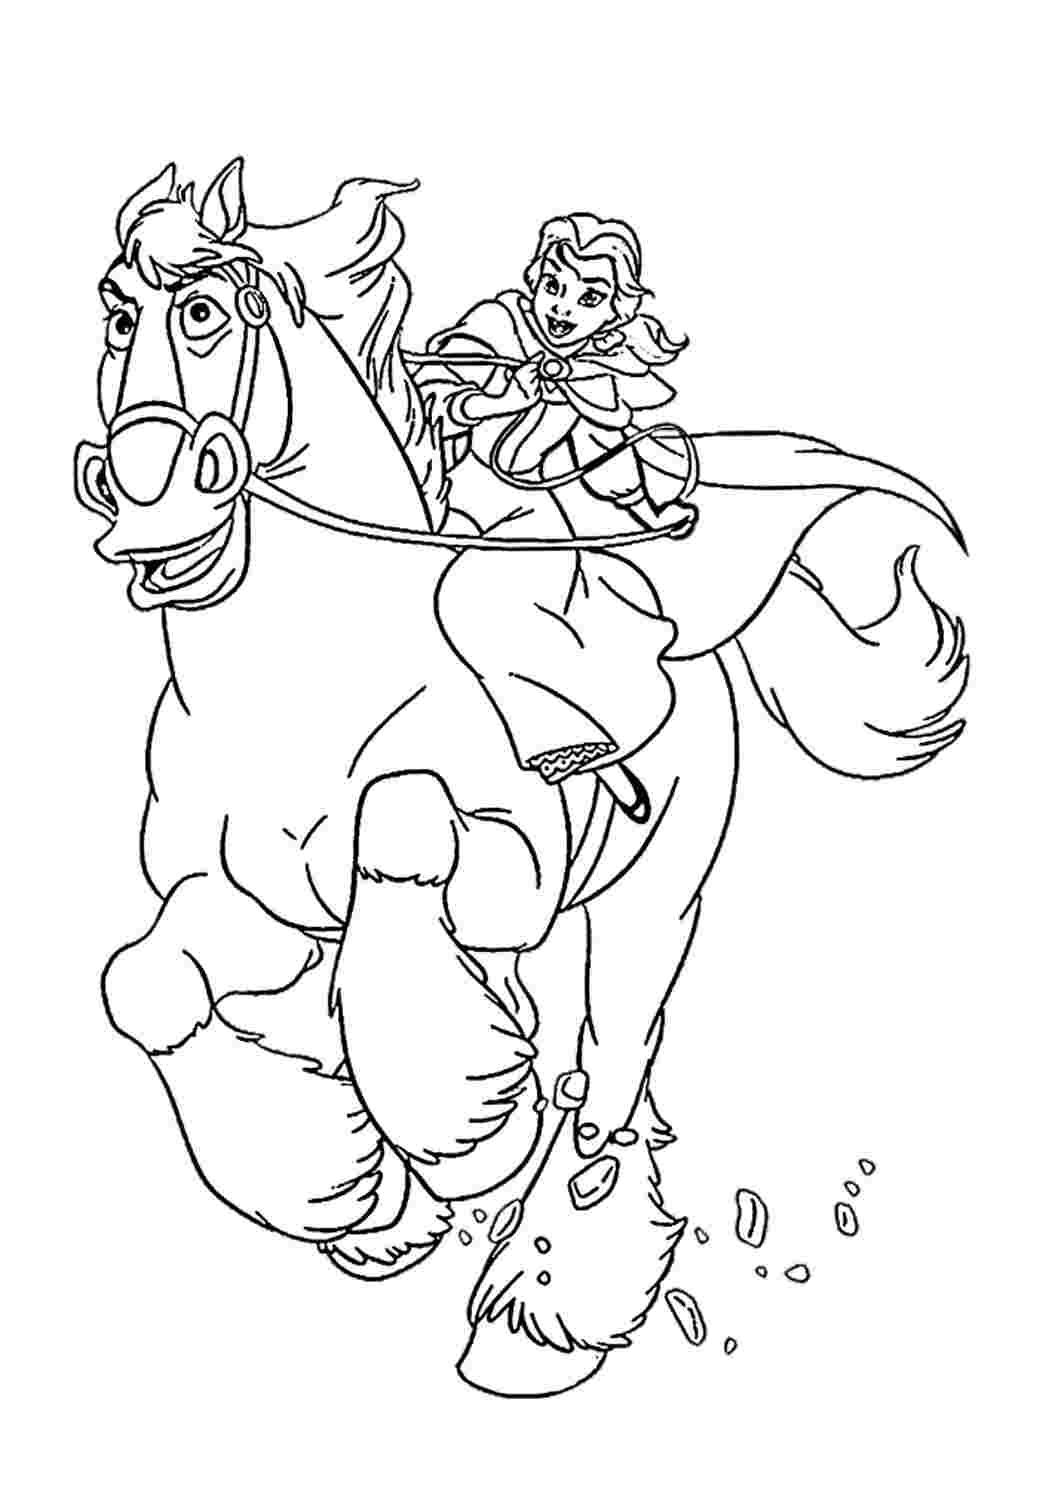 Раскраски Красивые раскраски. Вперёд, мой верный конь! Вперёд, мой верный конь! Раскраски скачать и распечатать бесплатно.